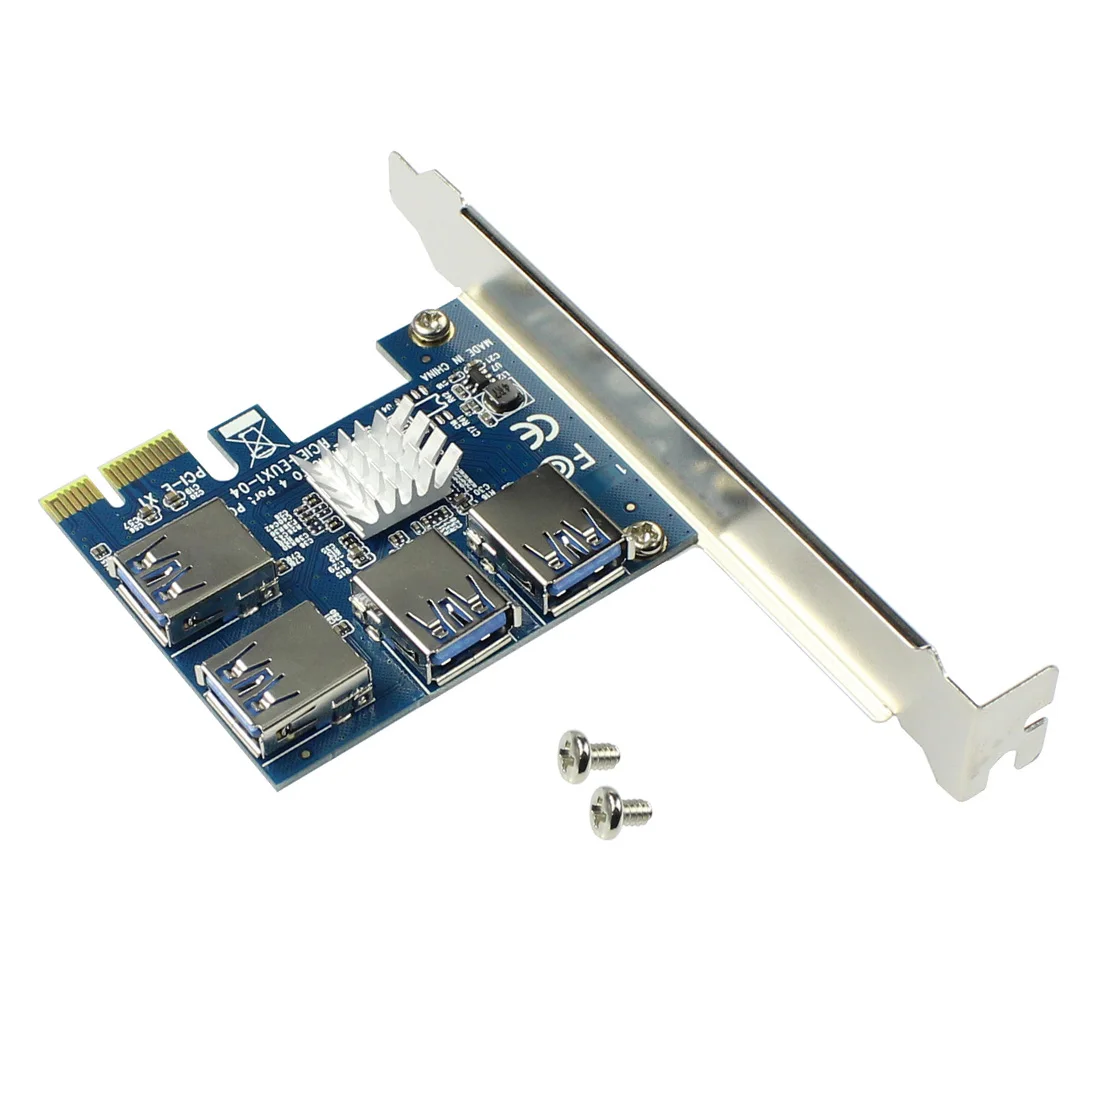 PCIE PCI-E PCI Express Странично Карта от 1x до 16x от 1 до 4 конектори USB 3.0 Множител Hub Адаптер